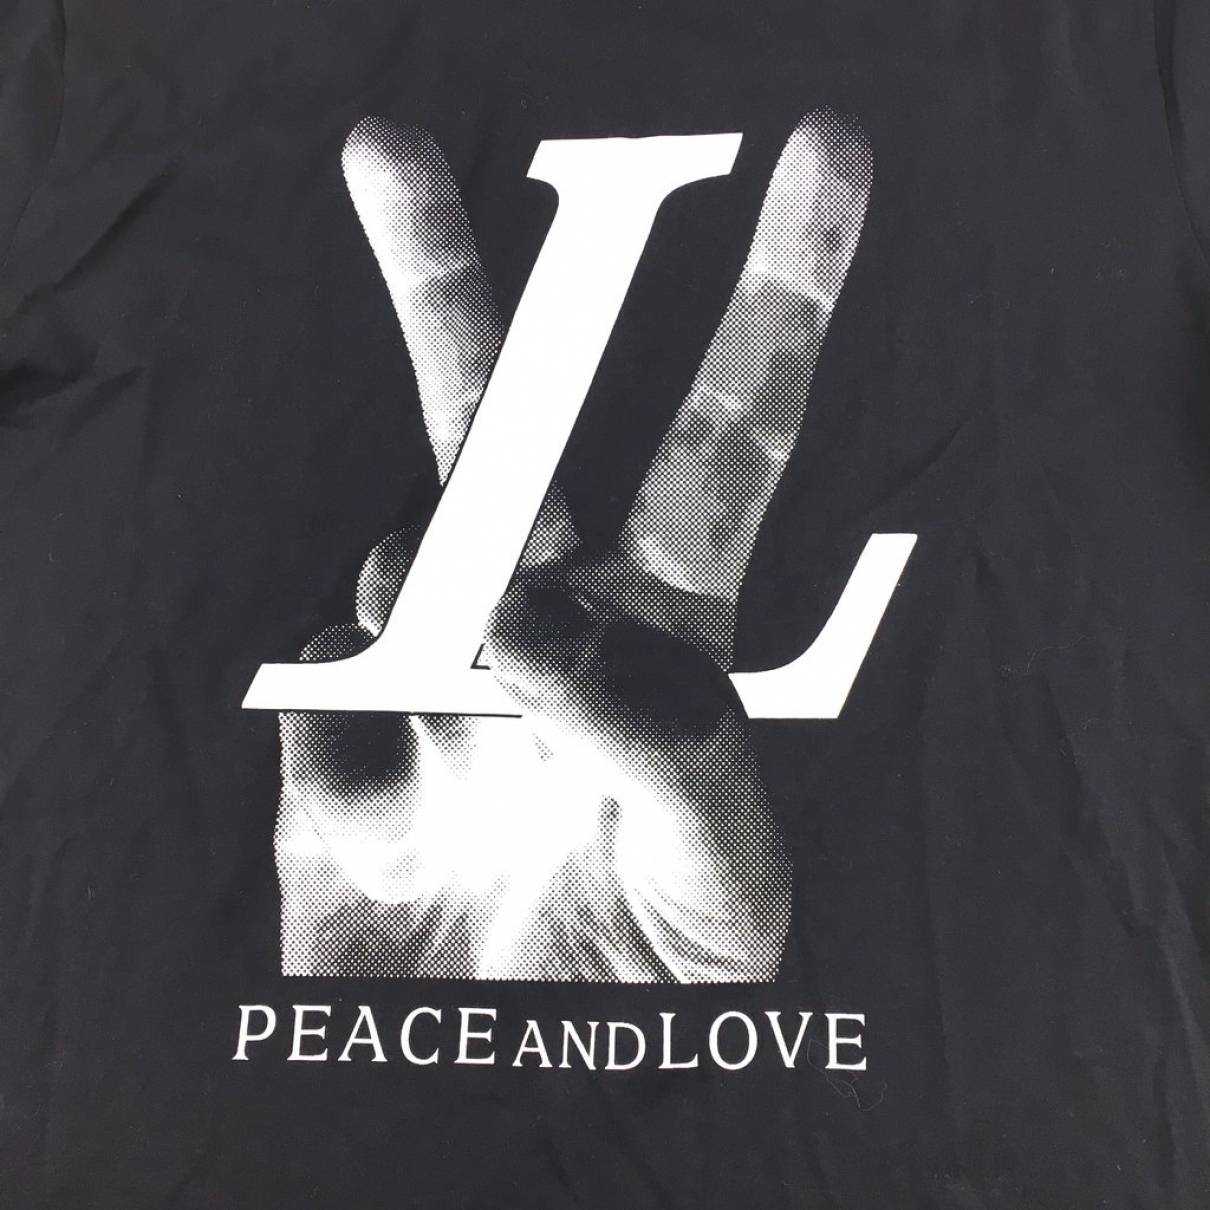 Louis Vuitton Black Cotton Peace and Love T-Shirt M Louis Vuitton